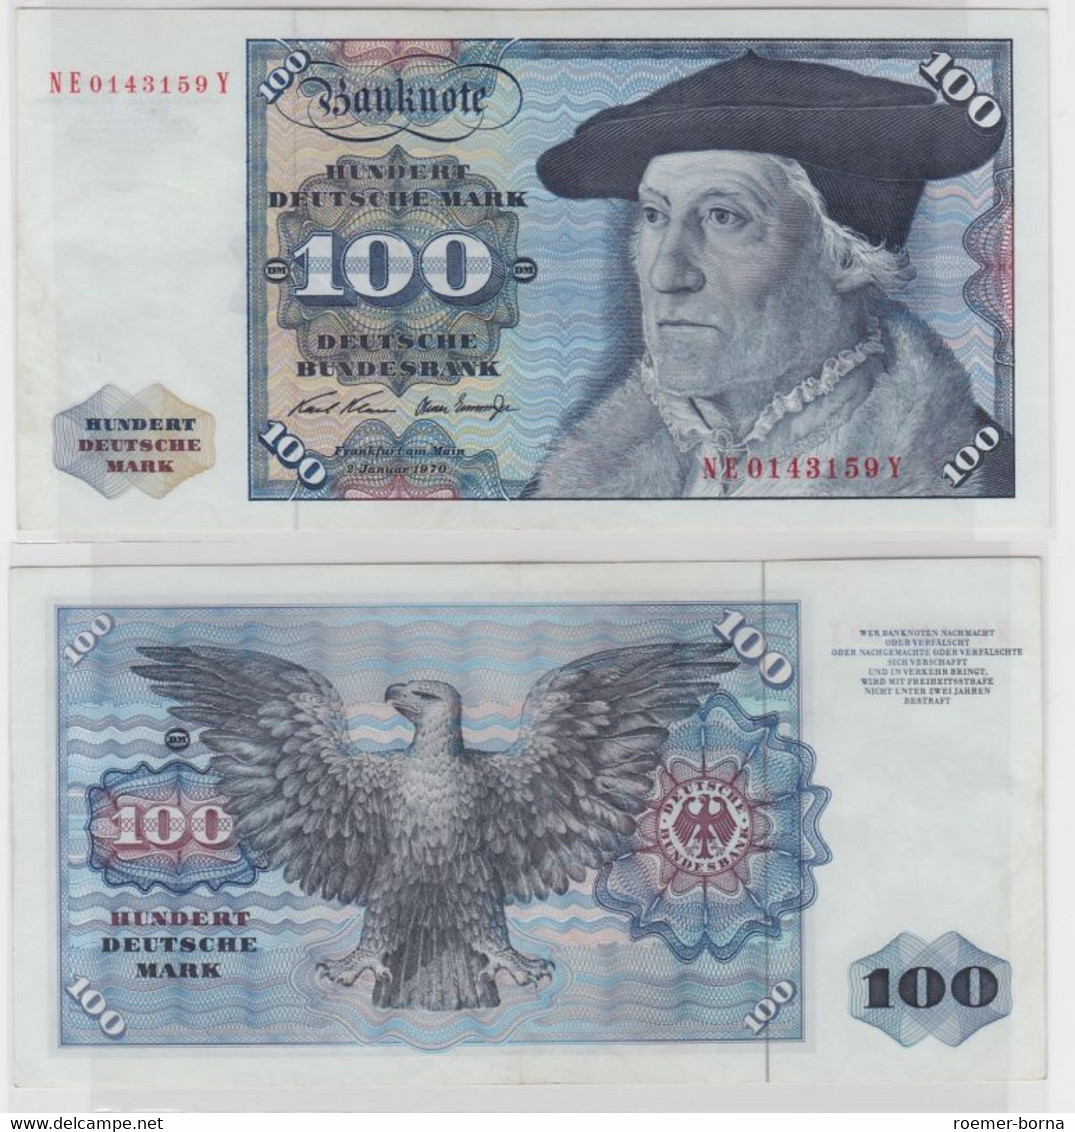 T146076 Banknote 100 DM Deutsche Mark Ro. 273b Schein 2.Jan 1970 KN NE 0143159 Y - 100 DM